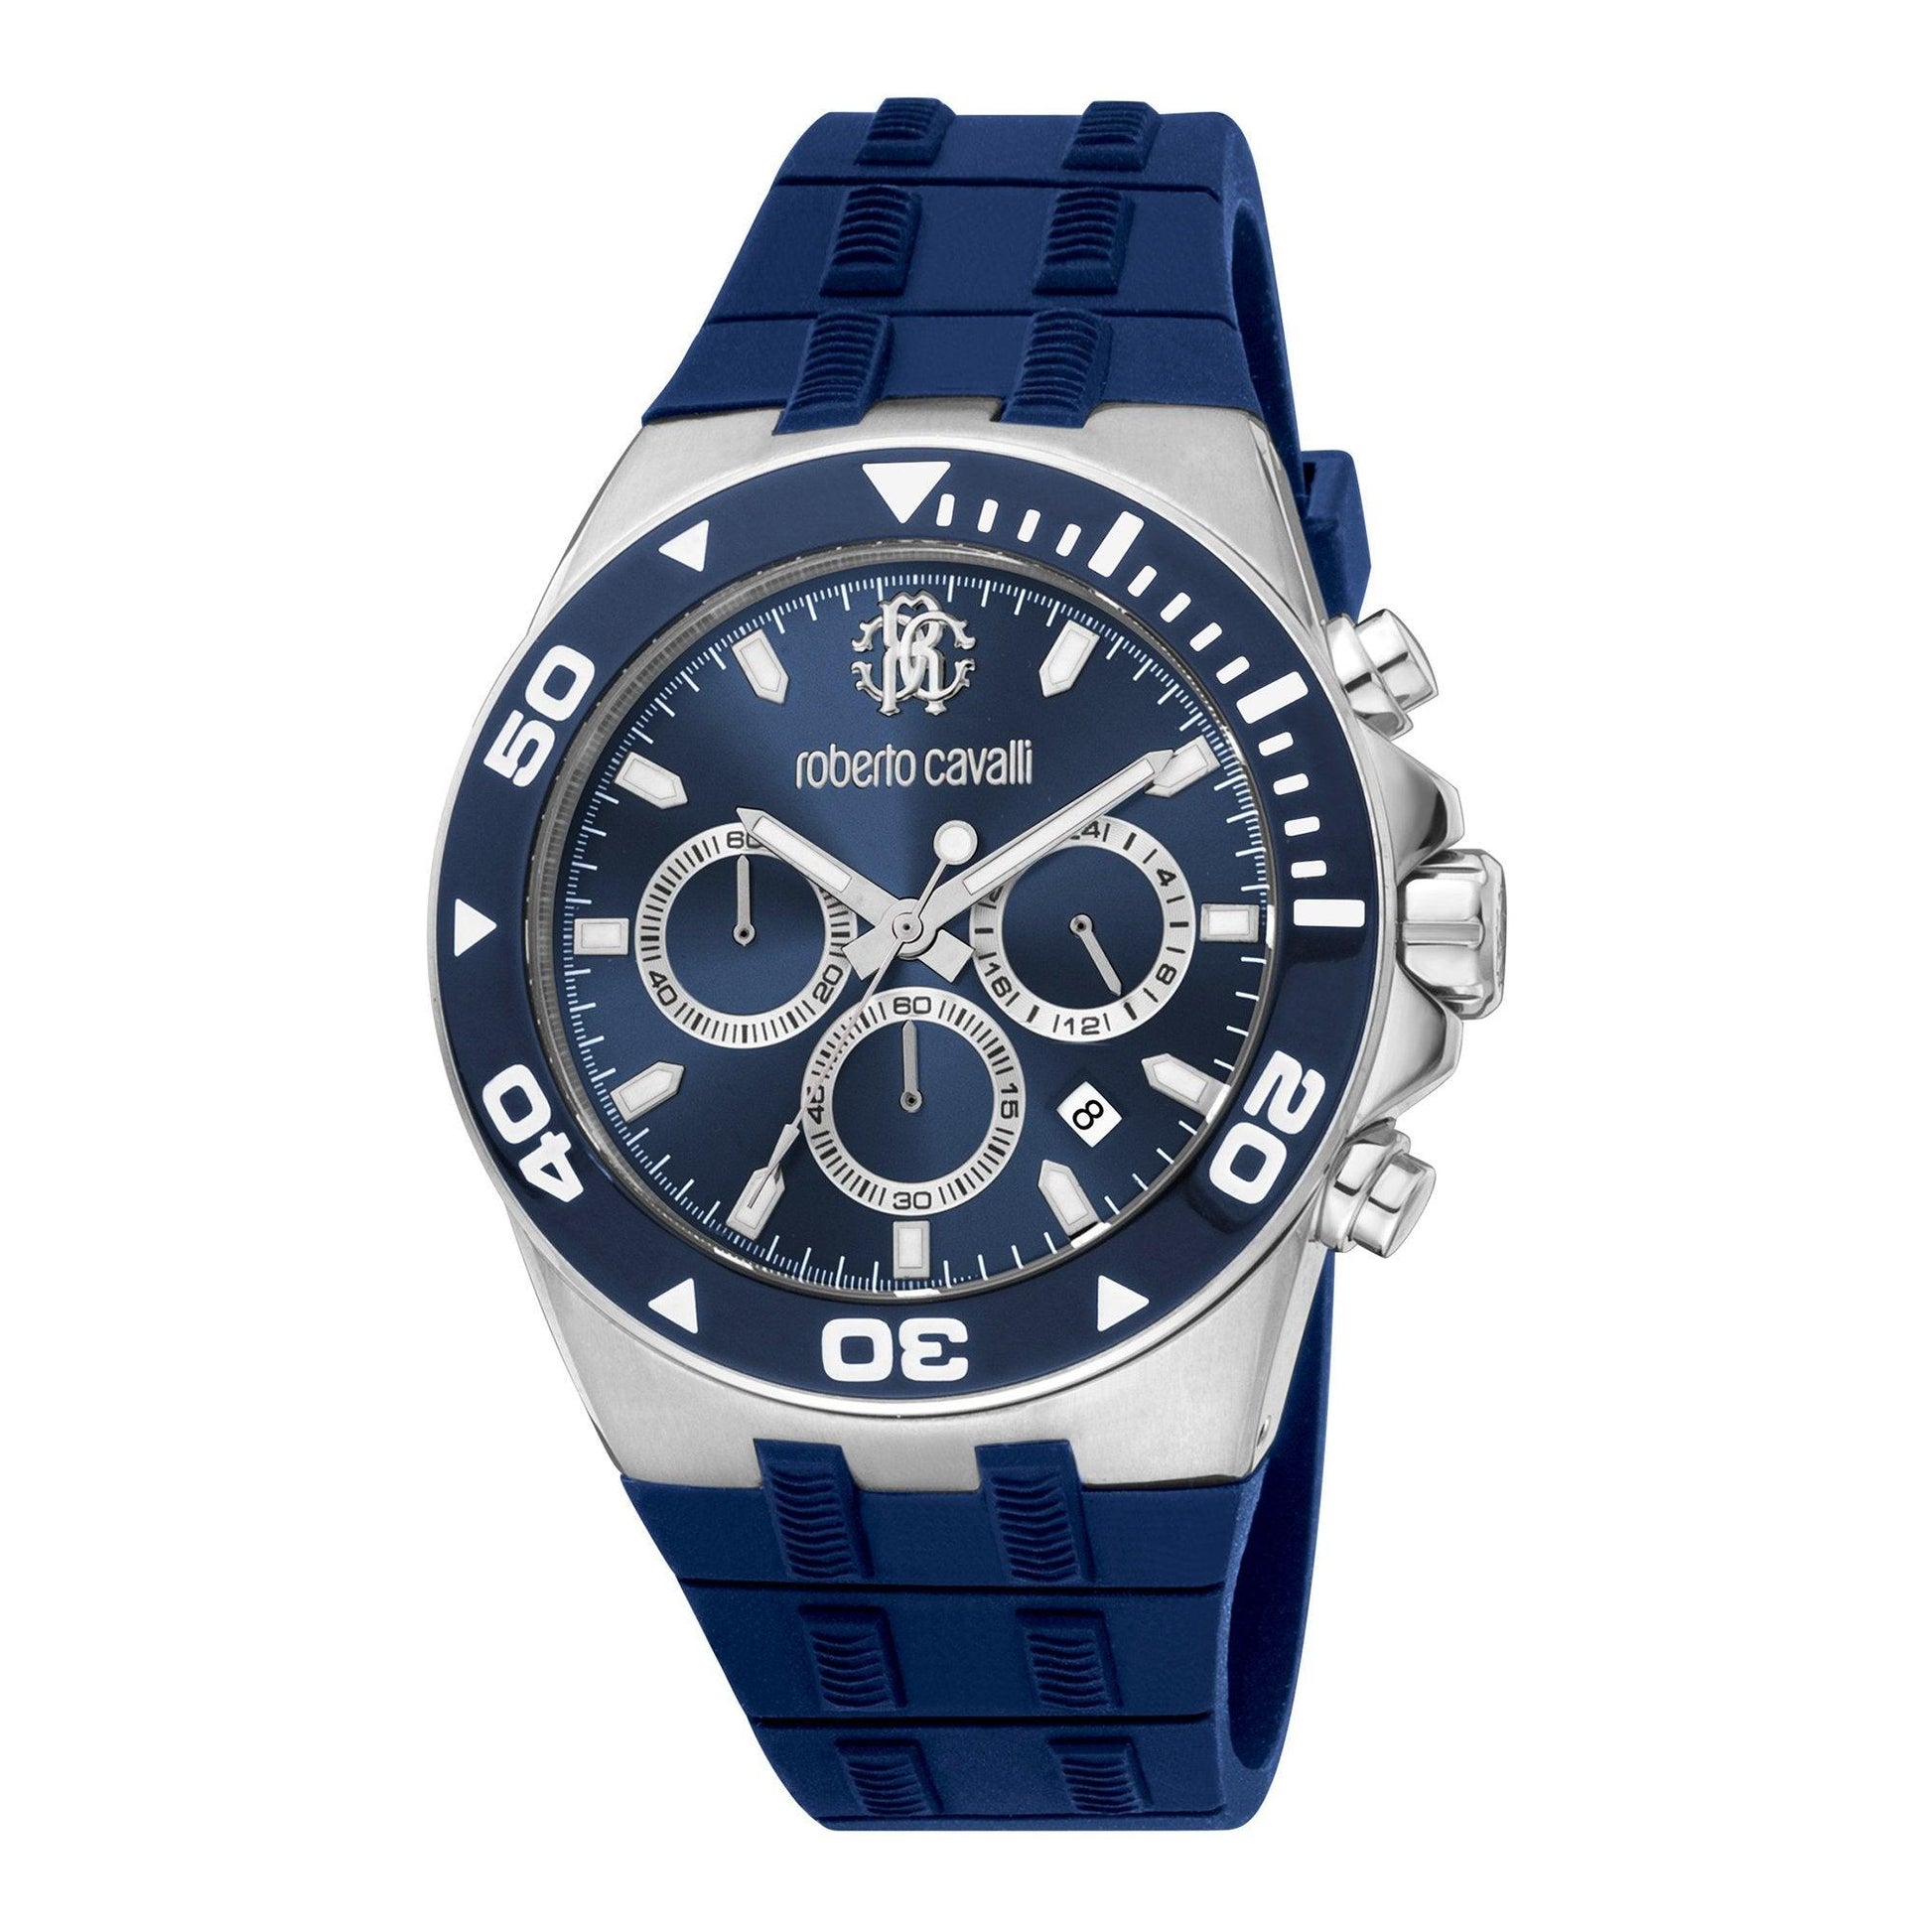 Roberto Cavalli RC5G016P0025 orologio uomo al quarzo - Kechiq Concept Boutique